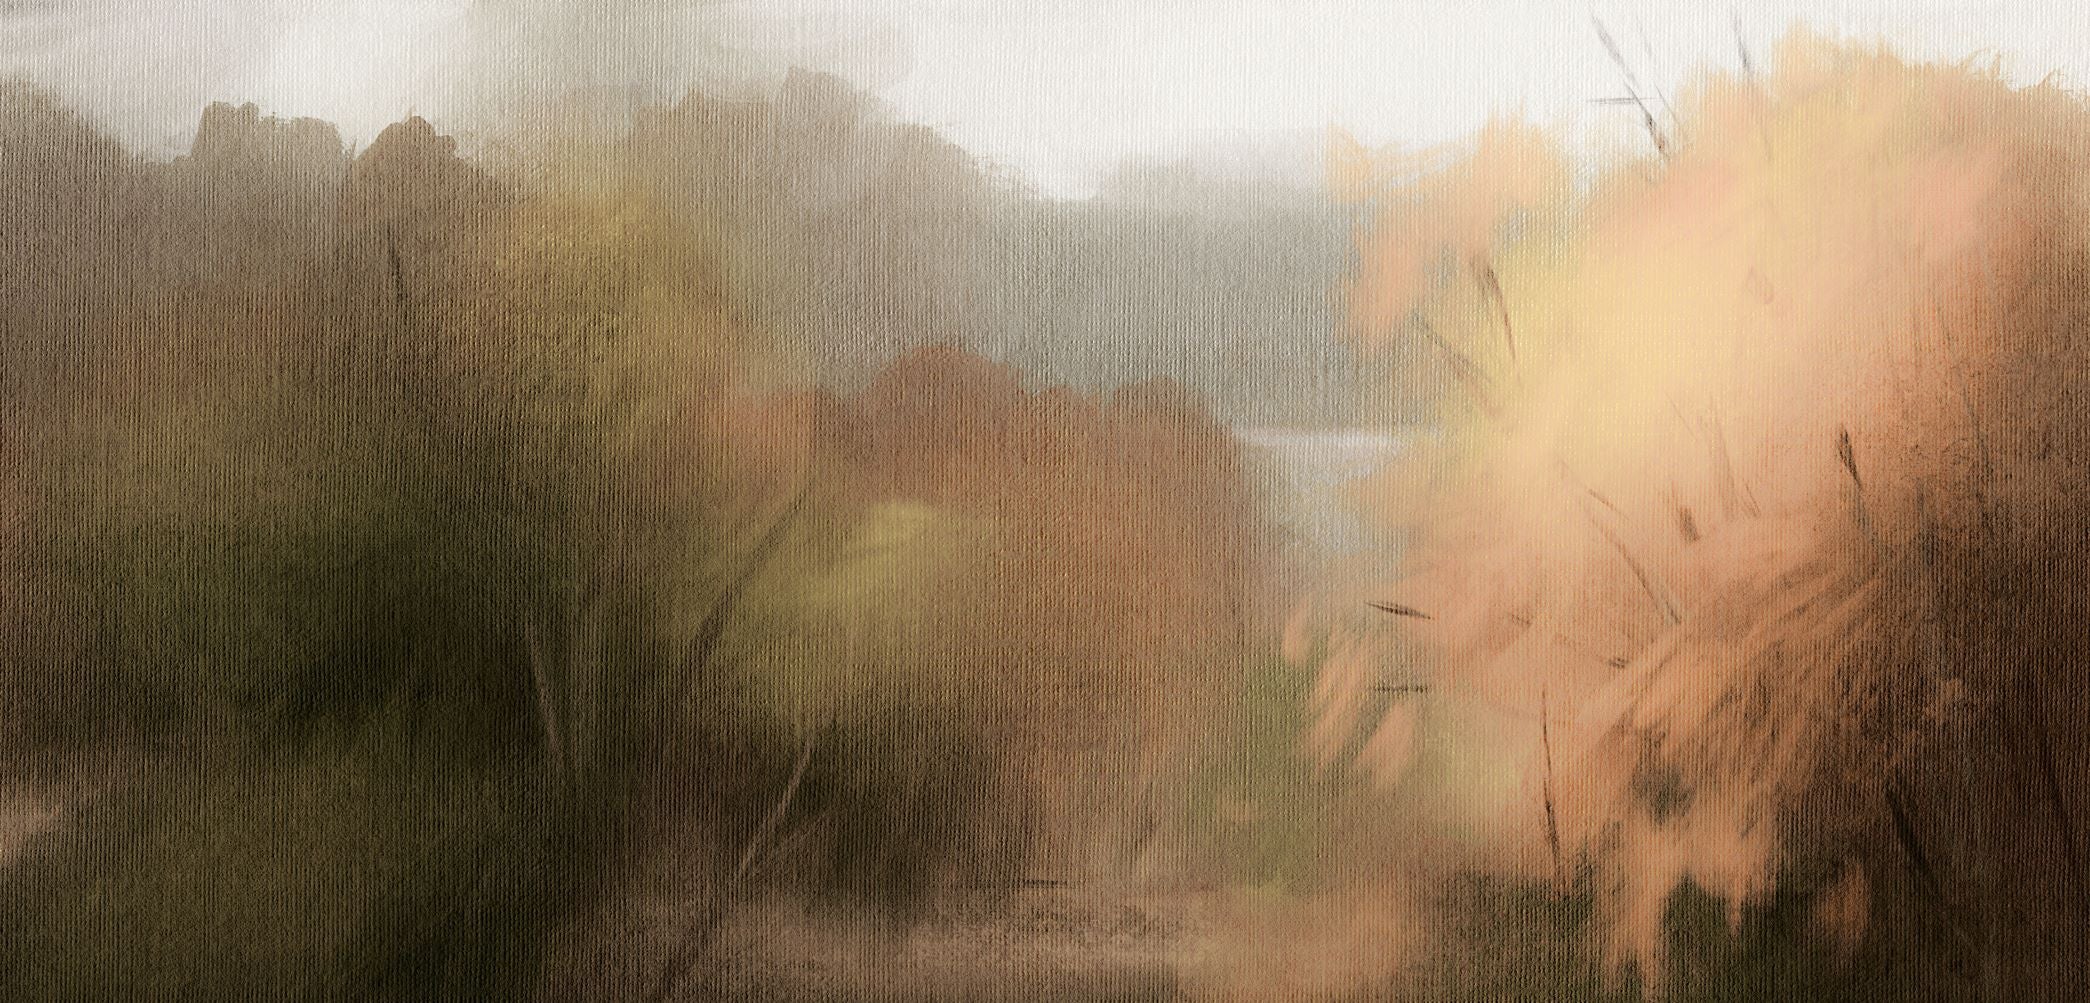 Autumn Abstract II